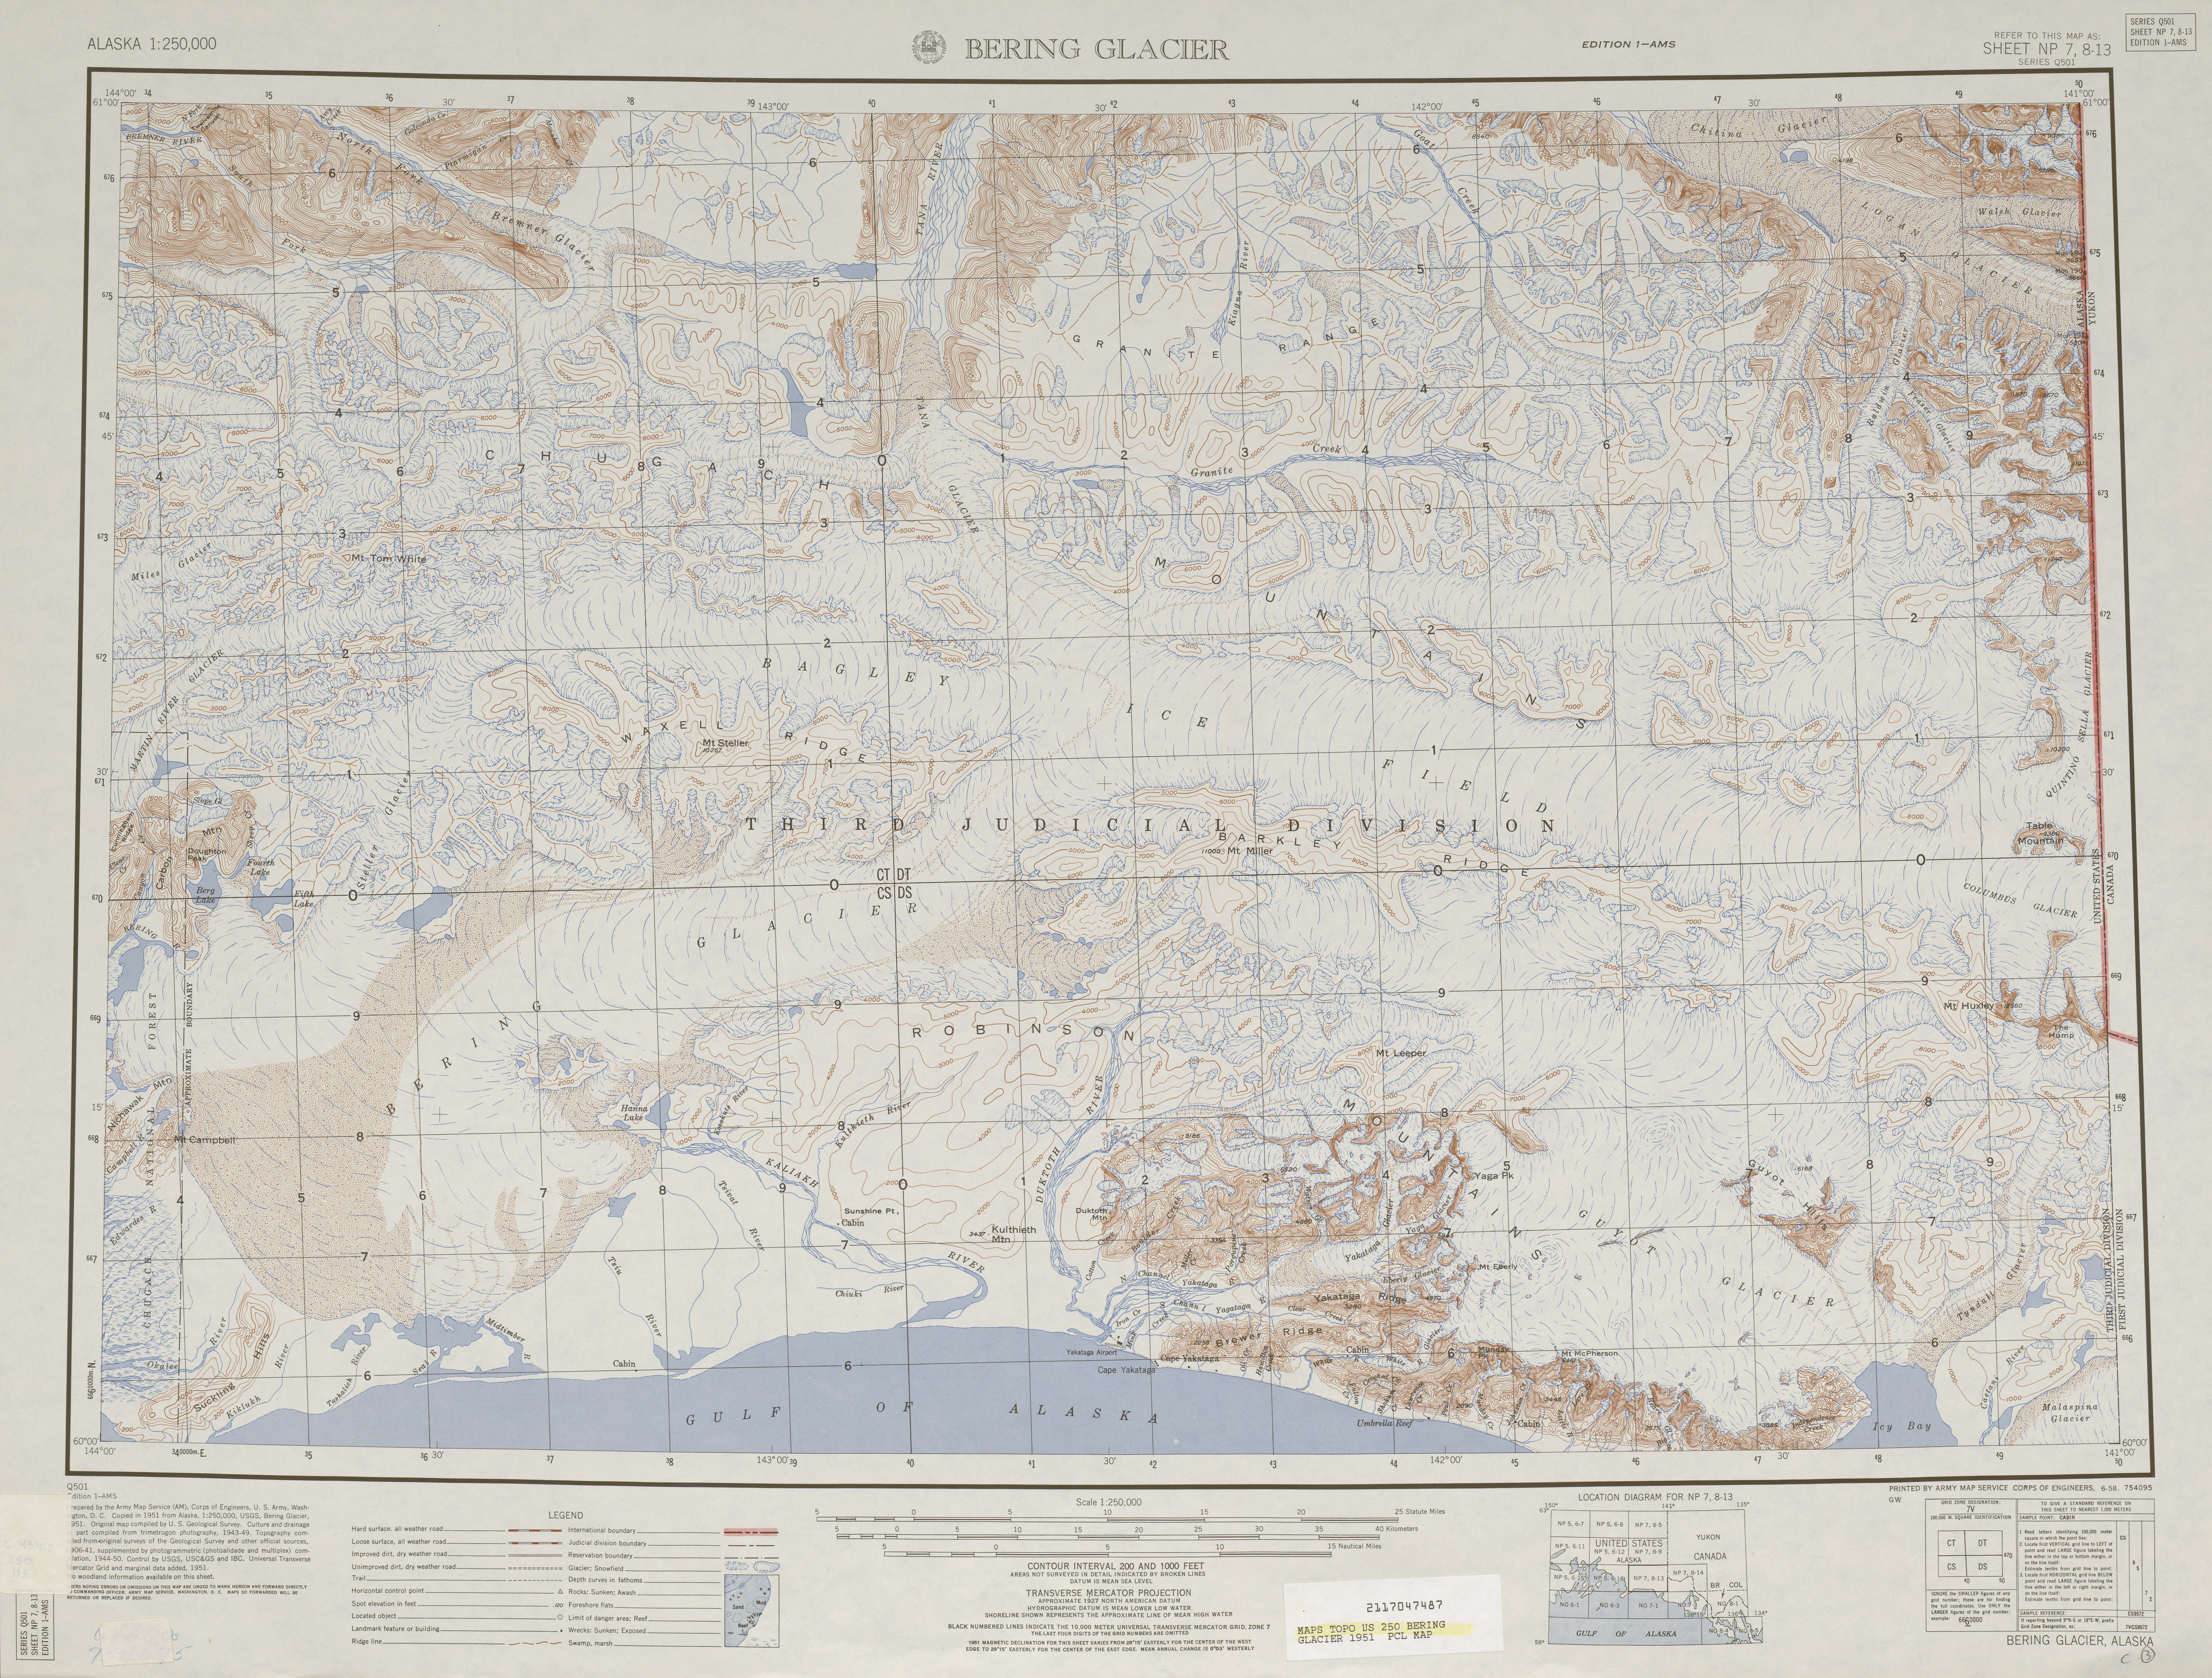 Hoja Bering Glacier del Mapa Topográfico de los Estados Unidos 1951